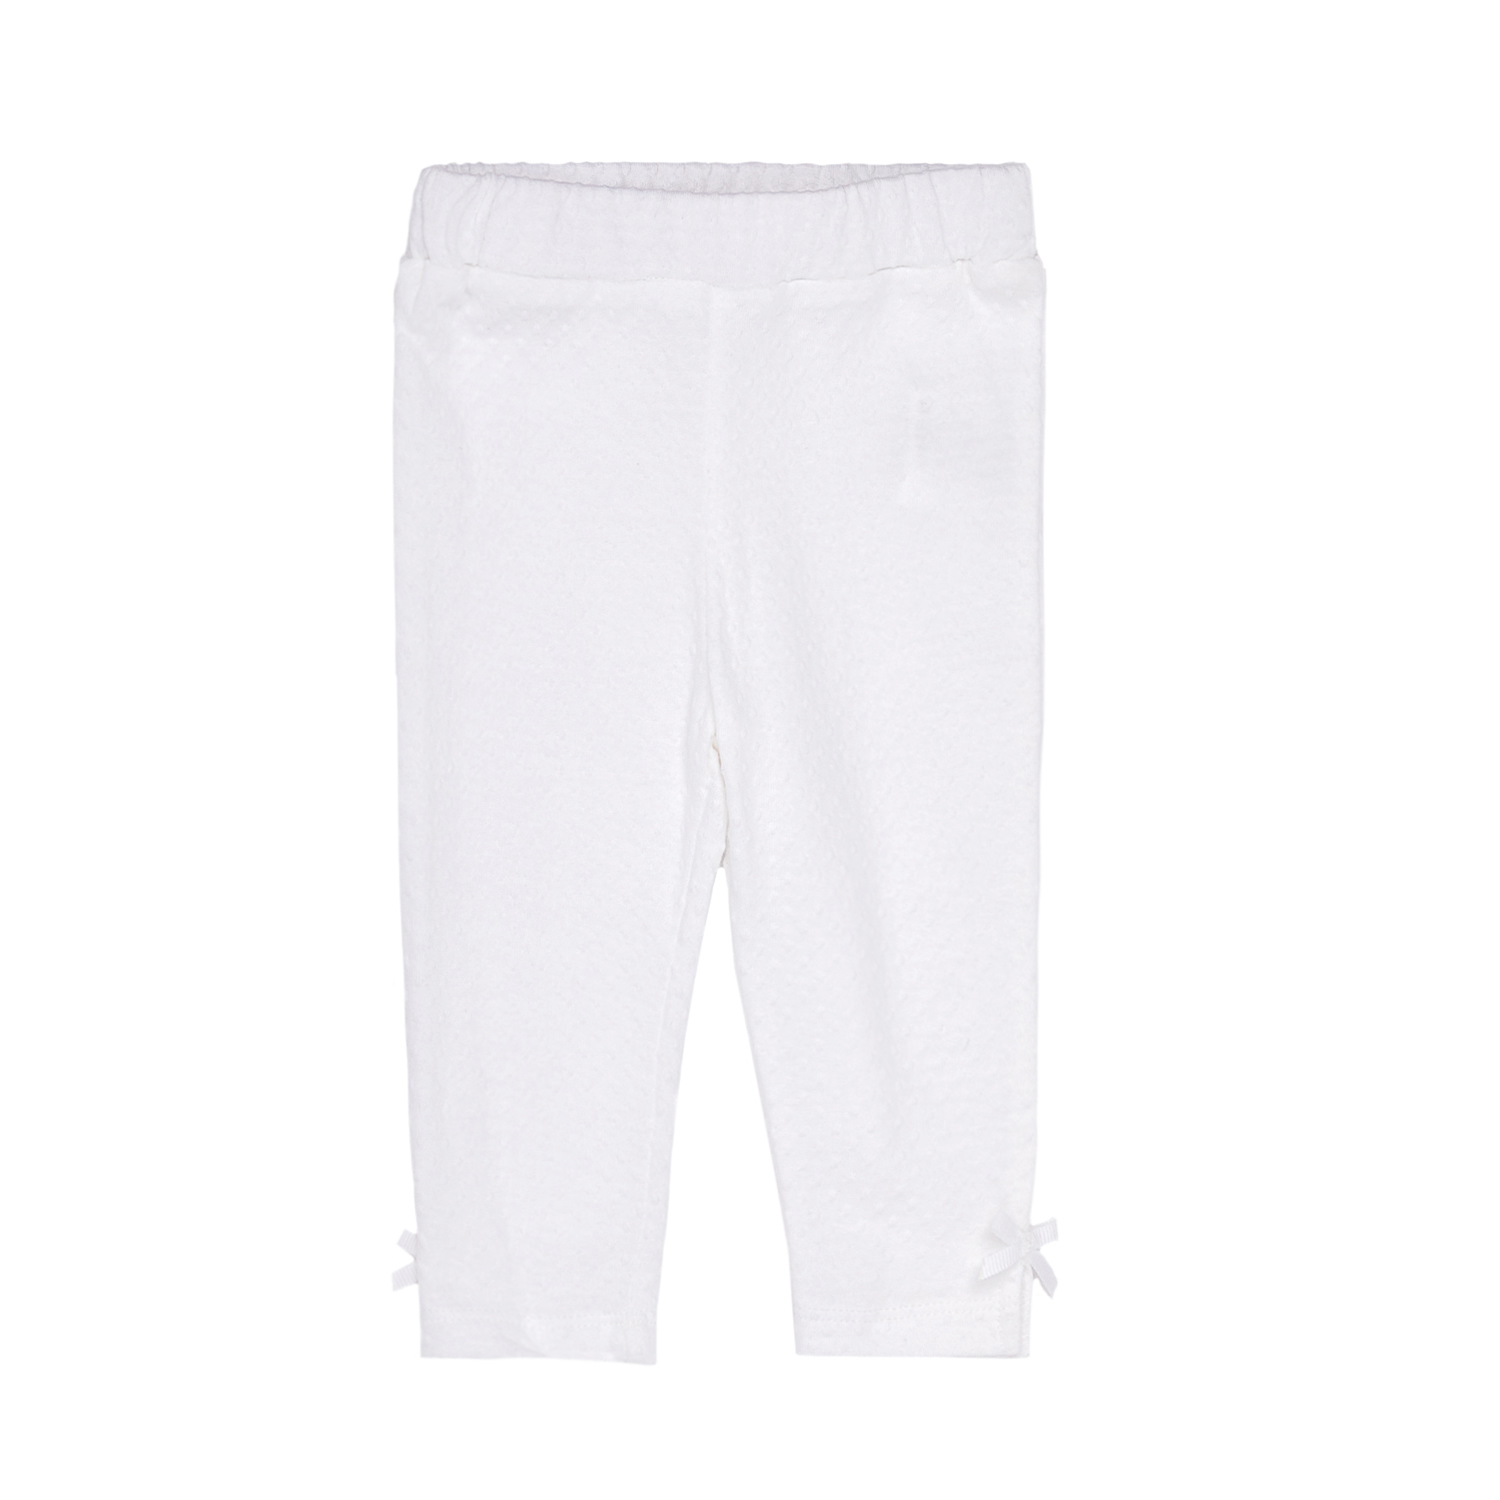 Παιδικά/Baby/Ρούχα/Παντελόνια PATACHOU - Βρεφικό κολάν PATACHOU άσπρο